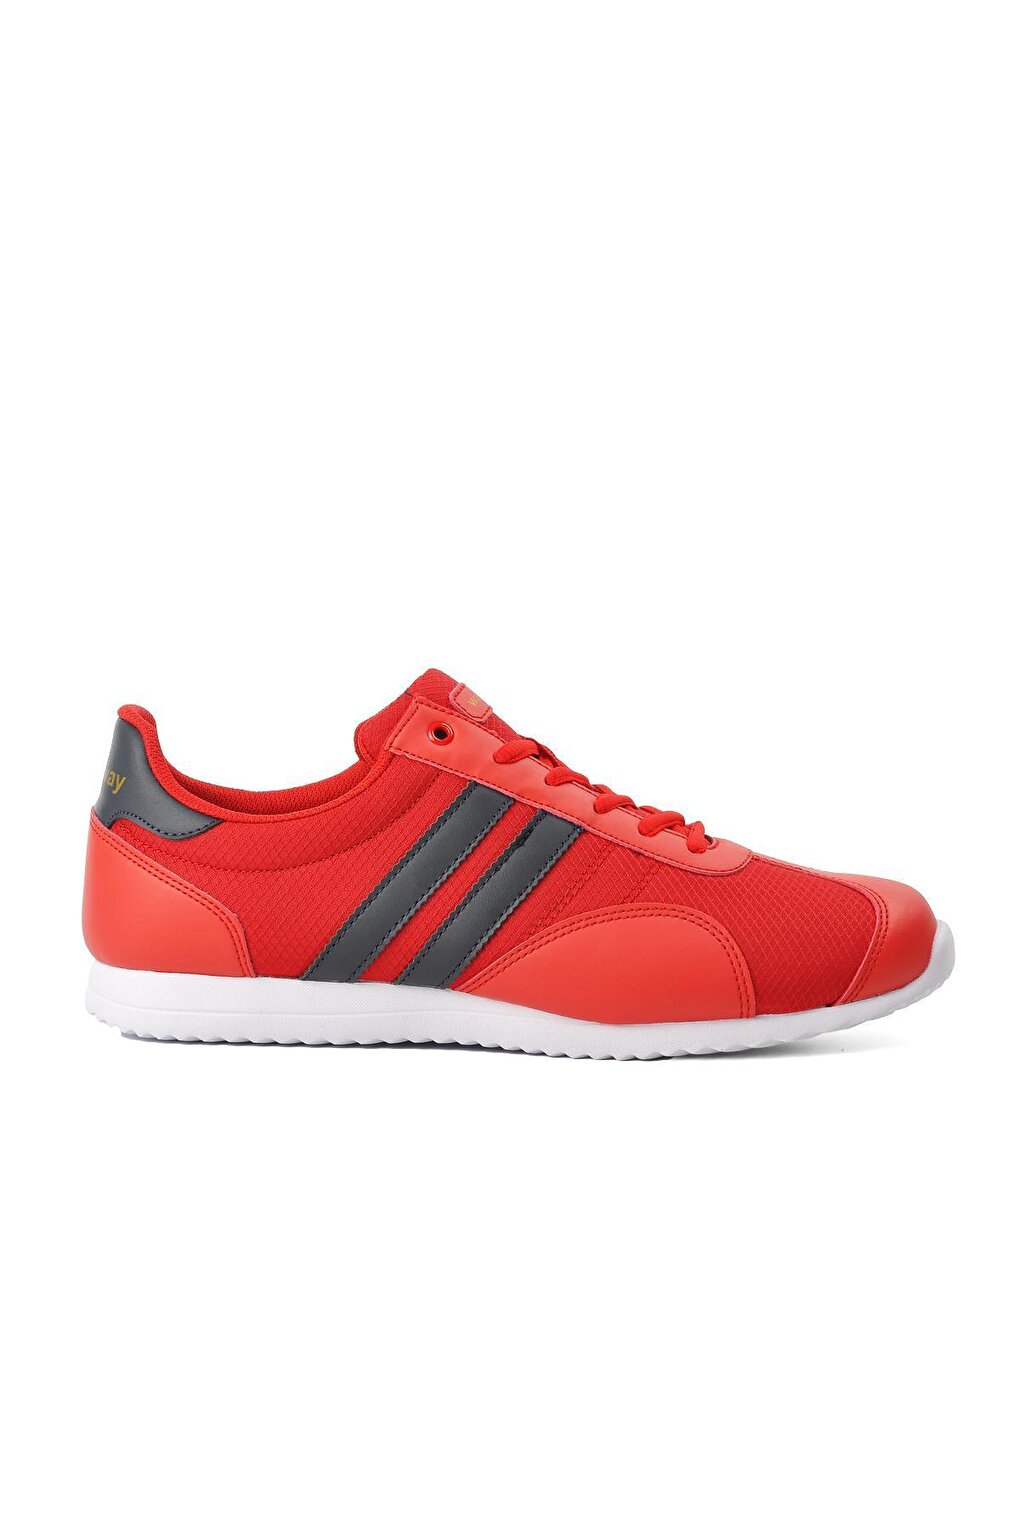 Красная мужская спортивная обувь Tondo Walkway